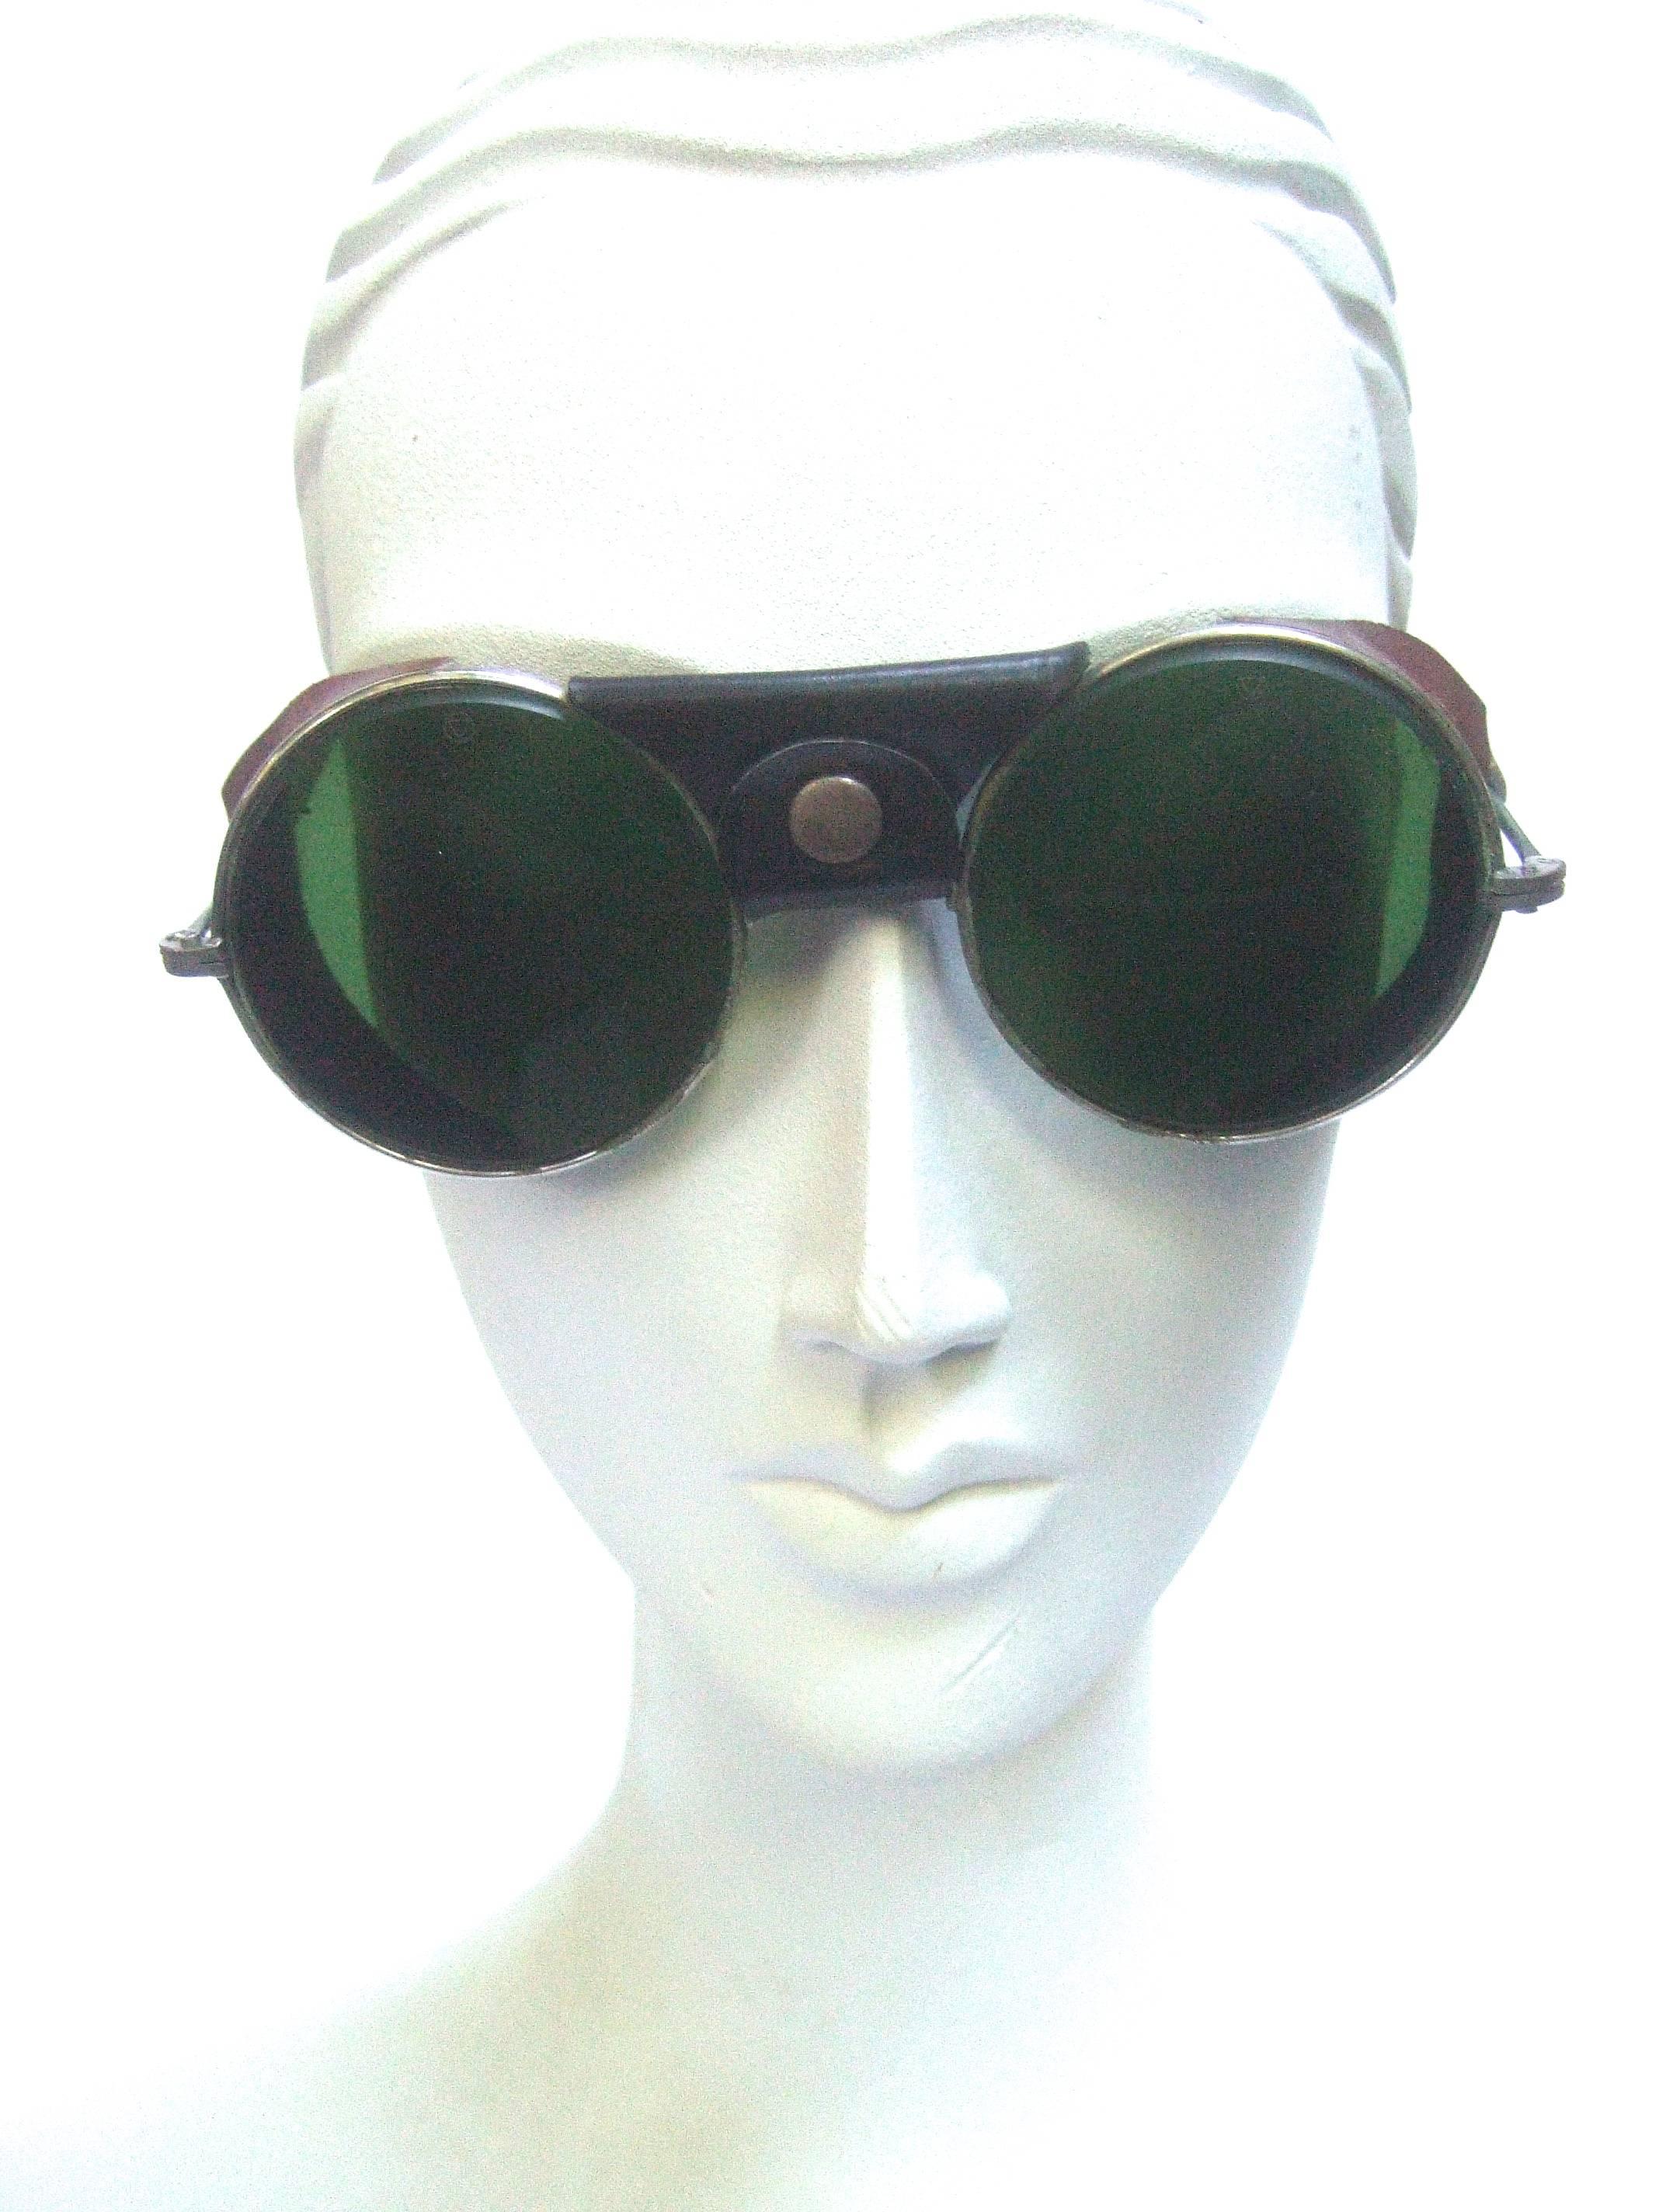 1940s aviator sunglasses